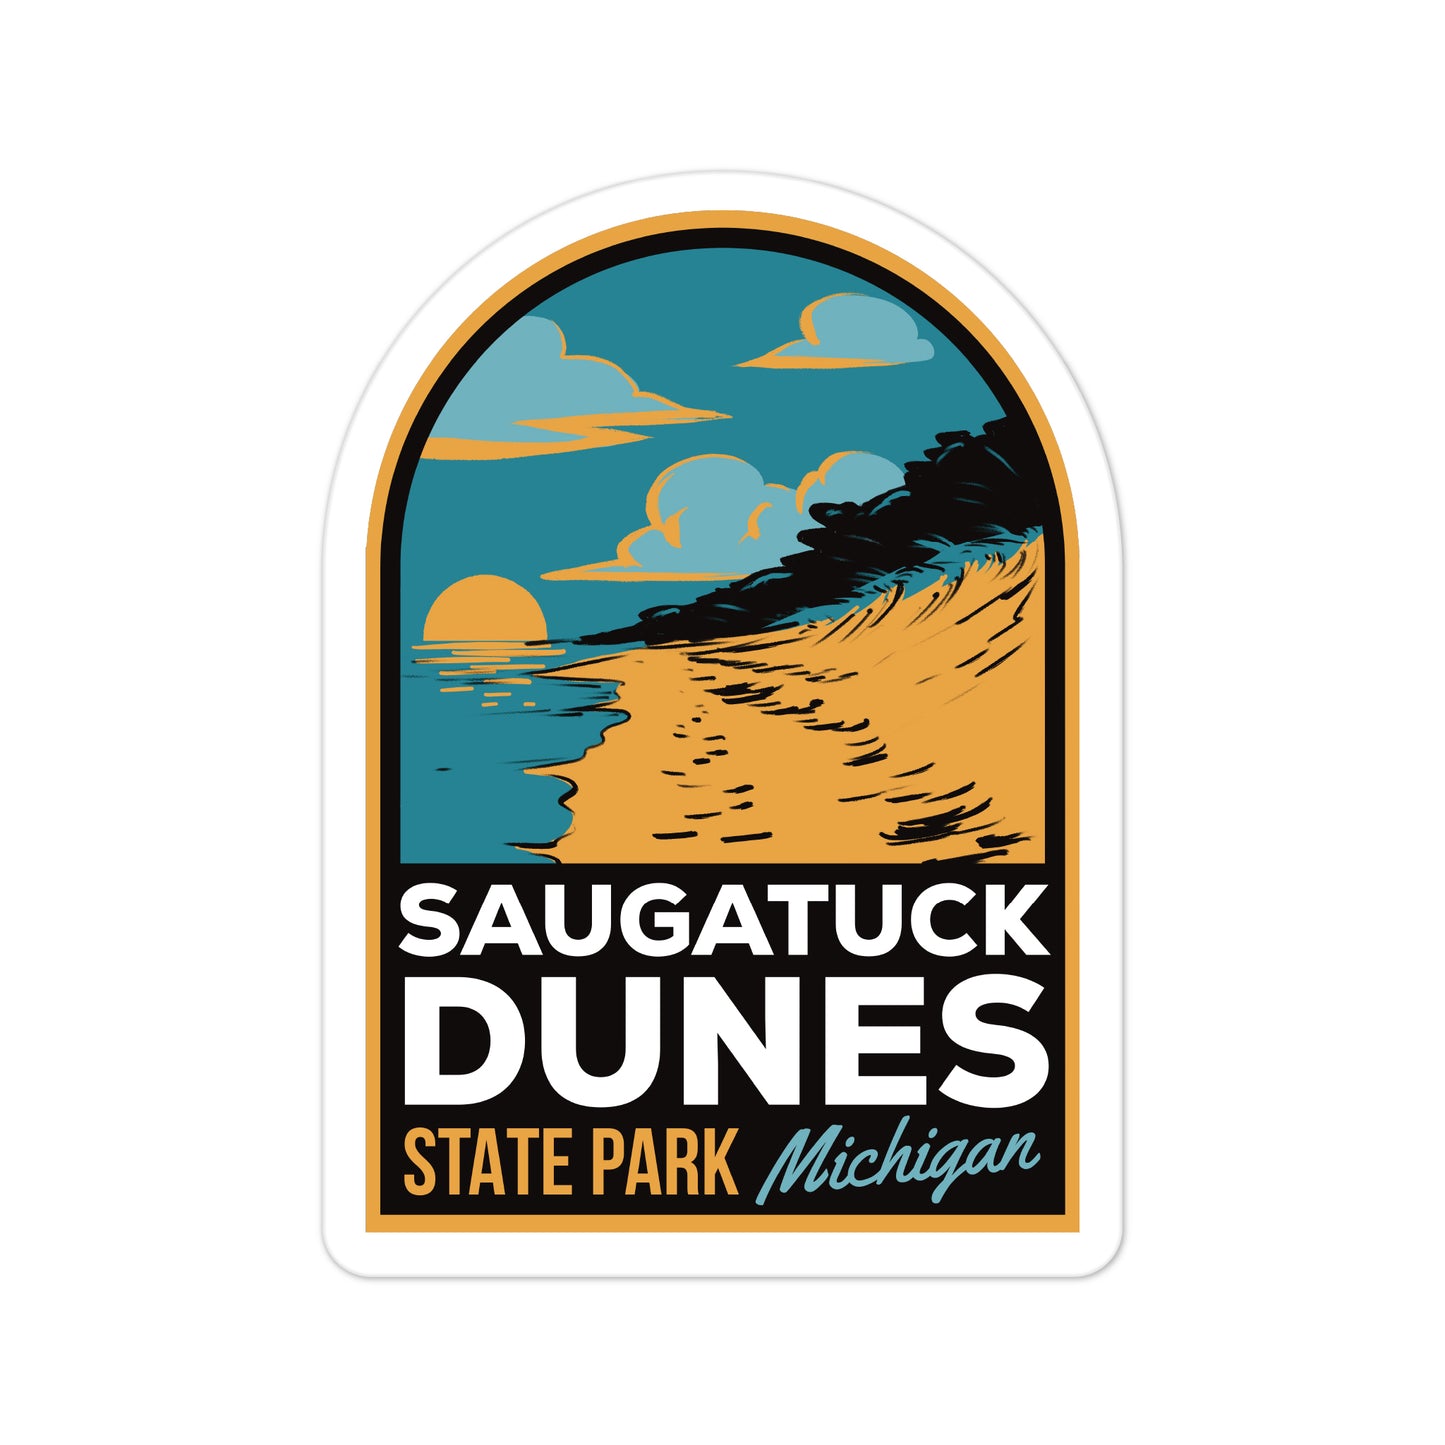 A sticker of Saugatuck Dunes State Park